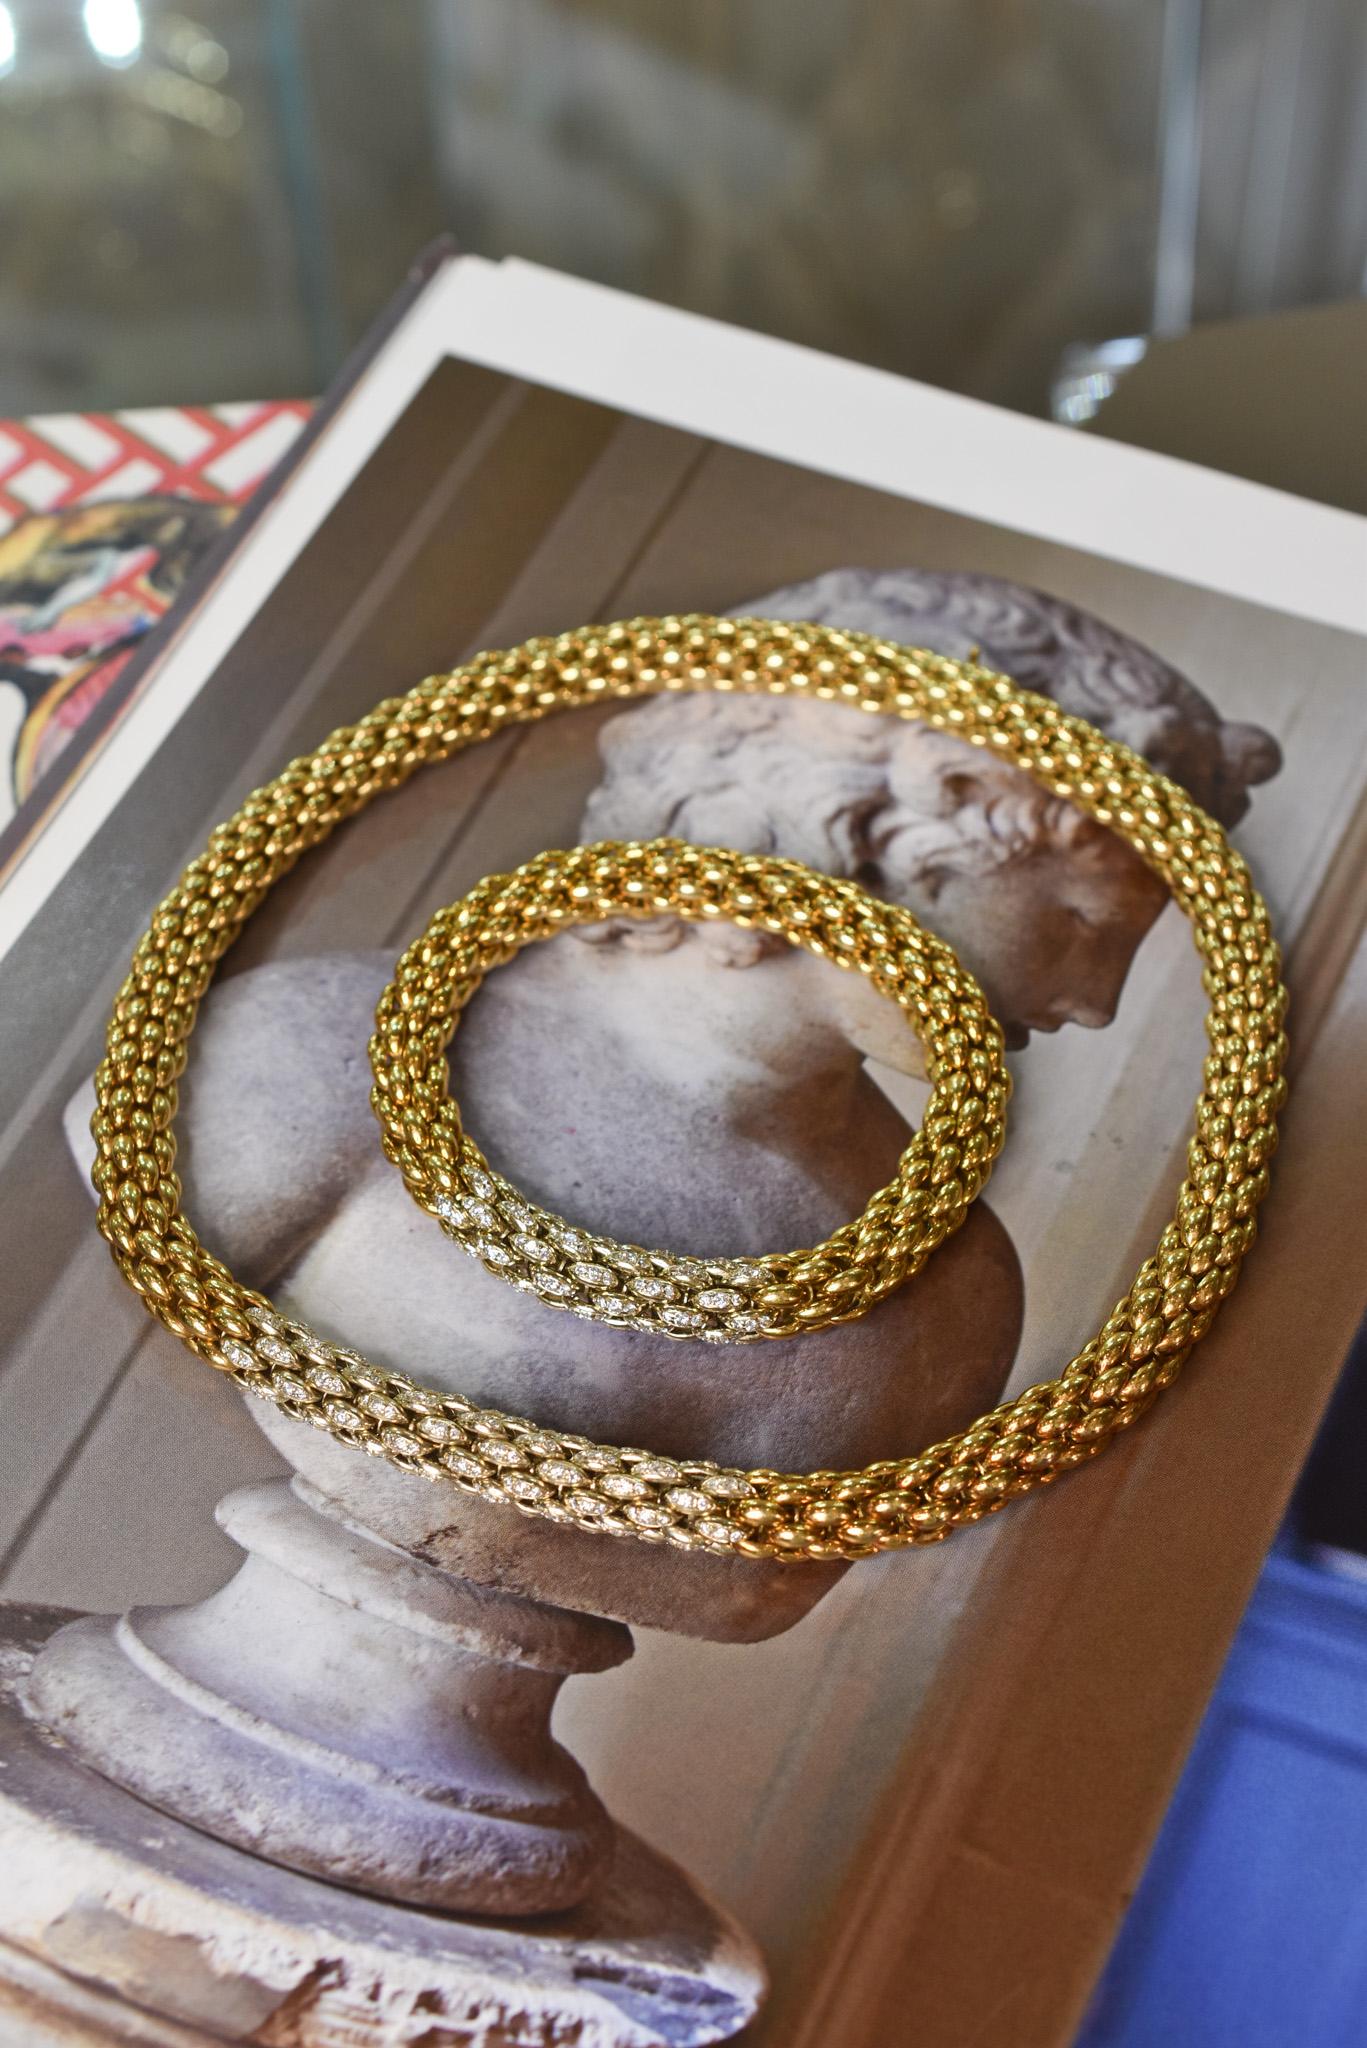 Collier et bracelet tubulaires en or jaune 18k avec des accents de diamants sur la partie centrale. Fabriqué en Italie, vers 1970.

Longueur du collier : 40 cm
Longueur du bracelet : 20 cm